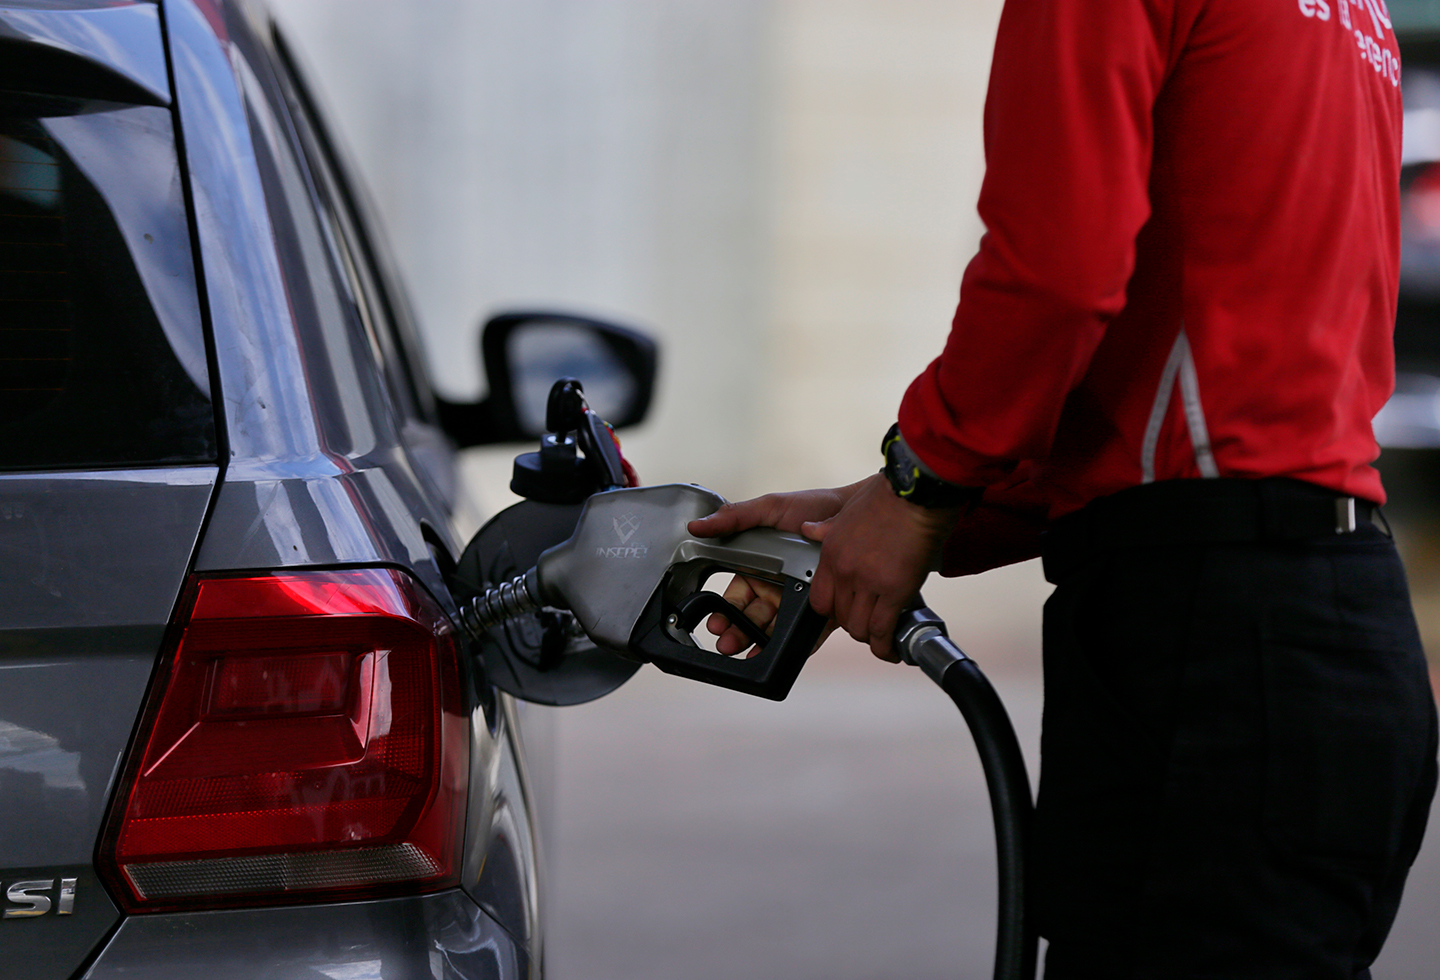 Aumento de la gasolina esta incidiendo en la inflación, reconoció un funcionario del gobierno Petro